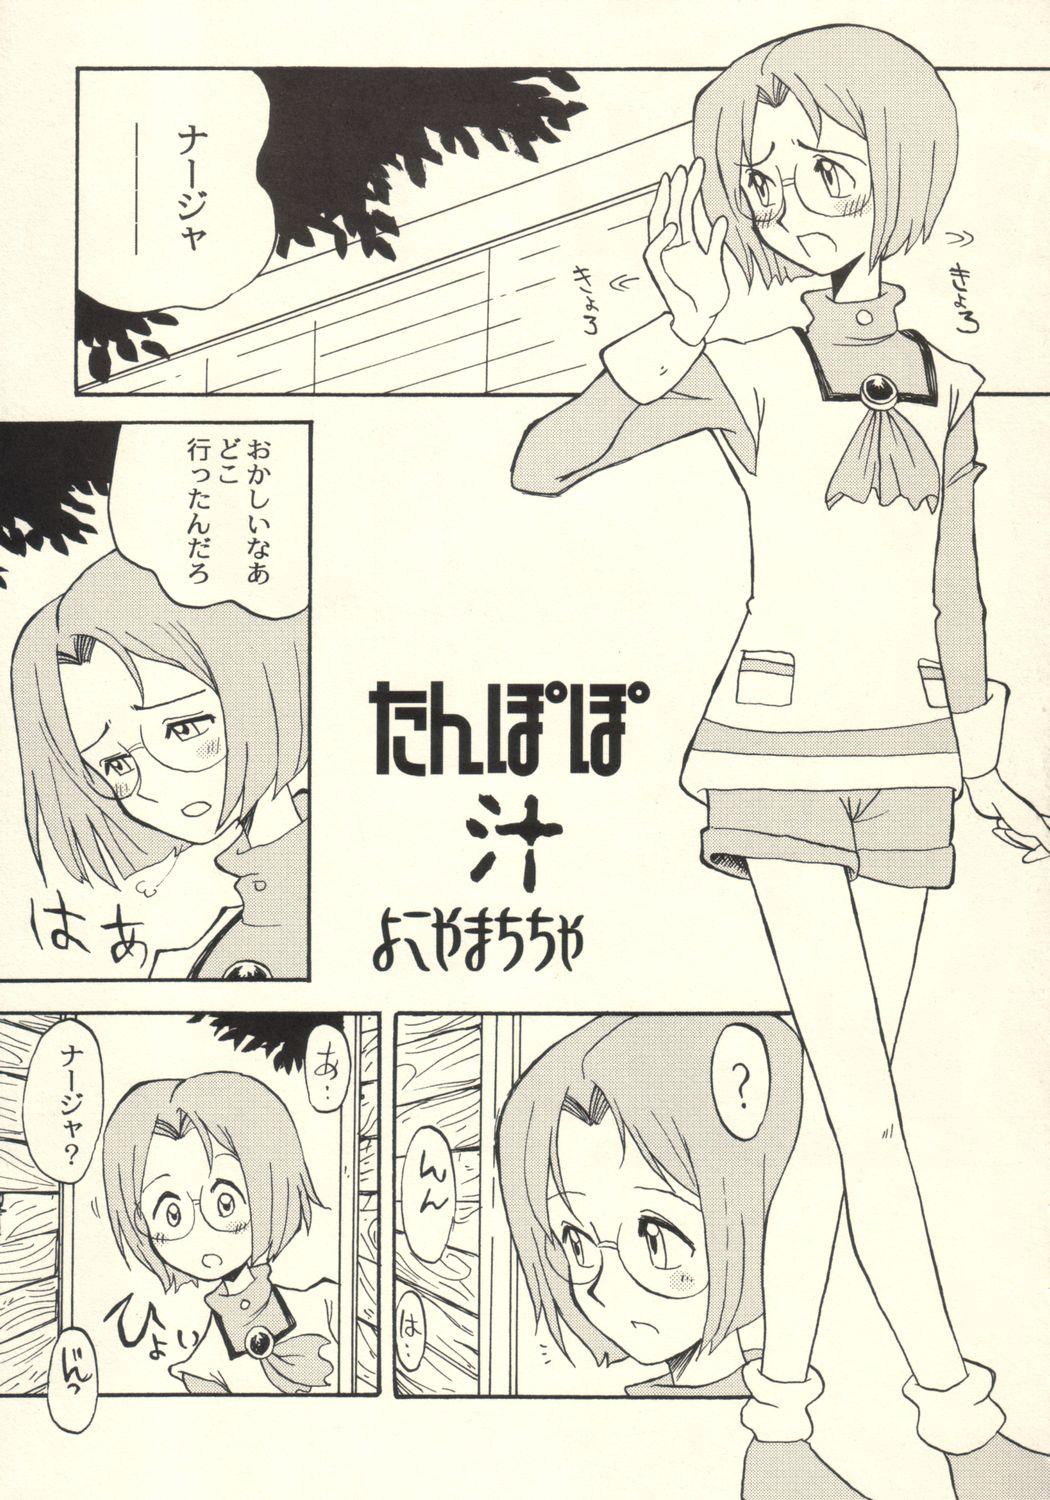 Sologirl Tanpopo Jiru - Ashita no nadja Boquete - Page 4